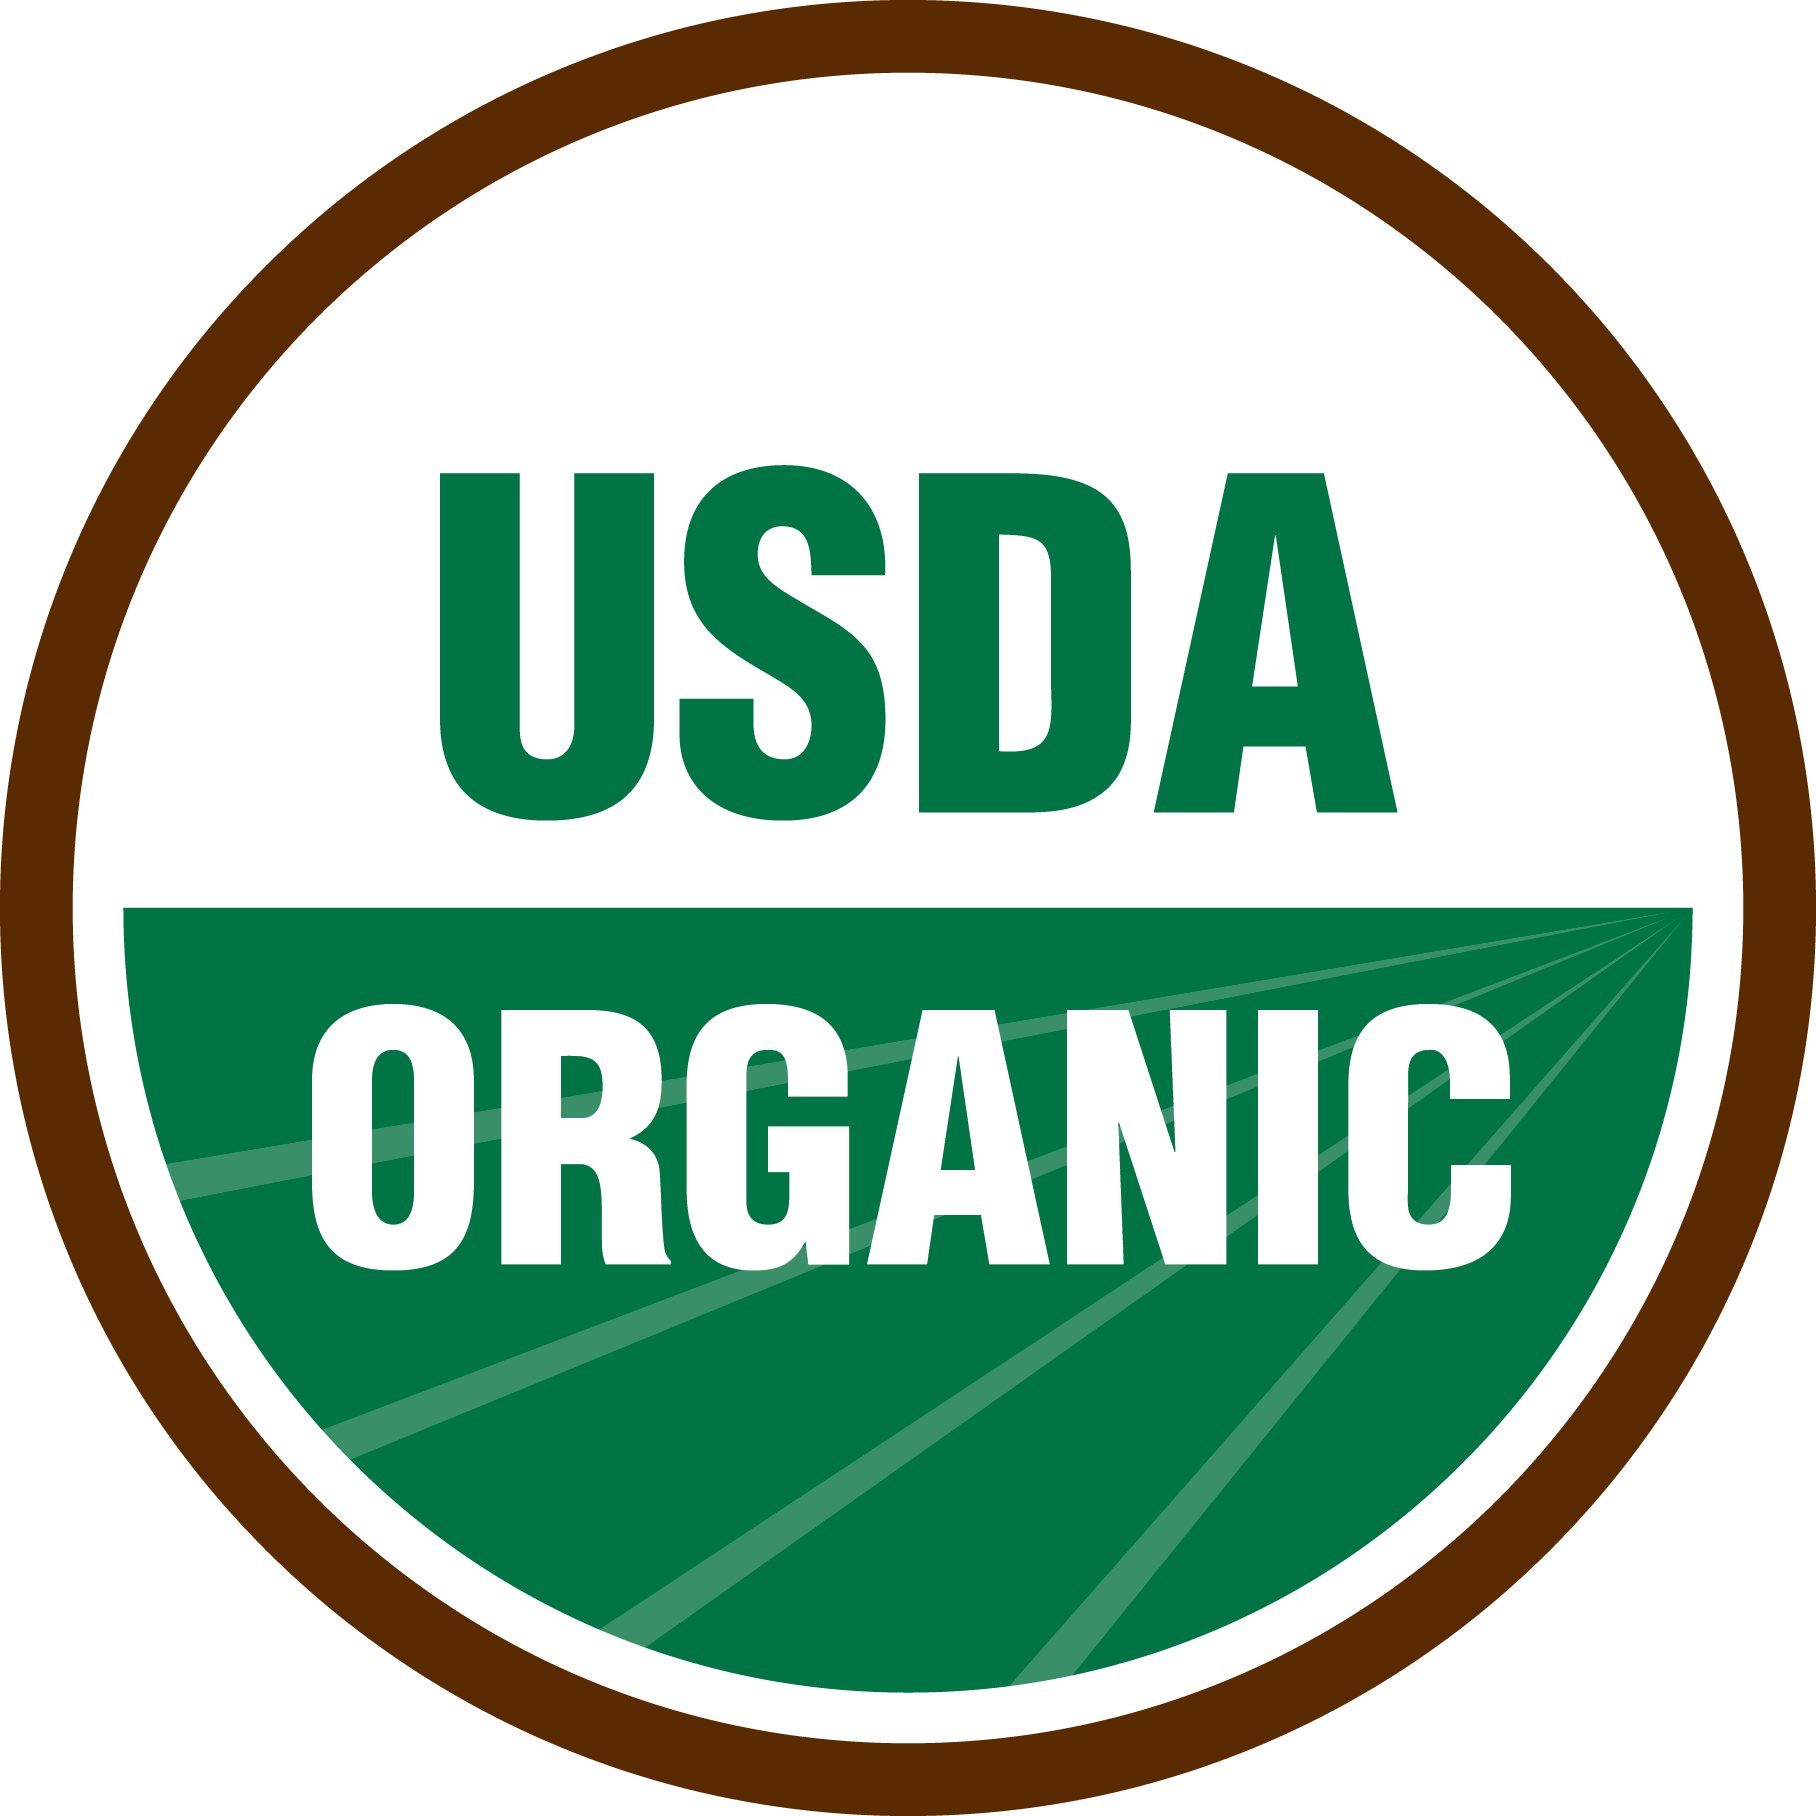 The Organic Seal.